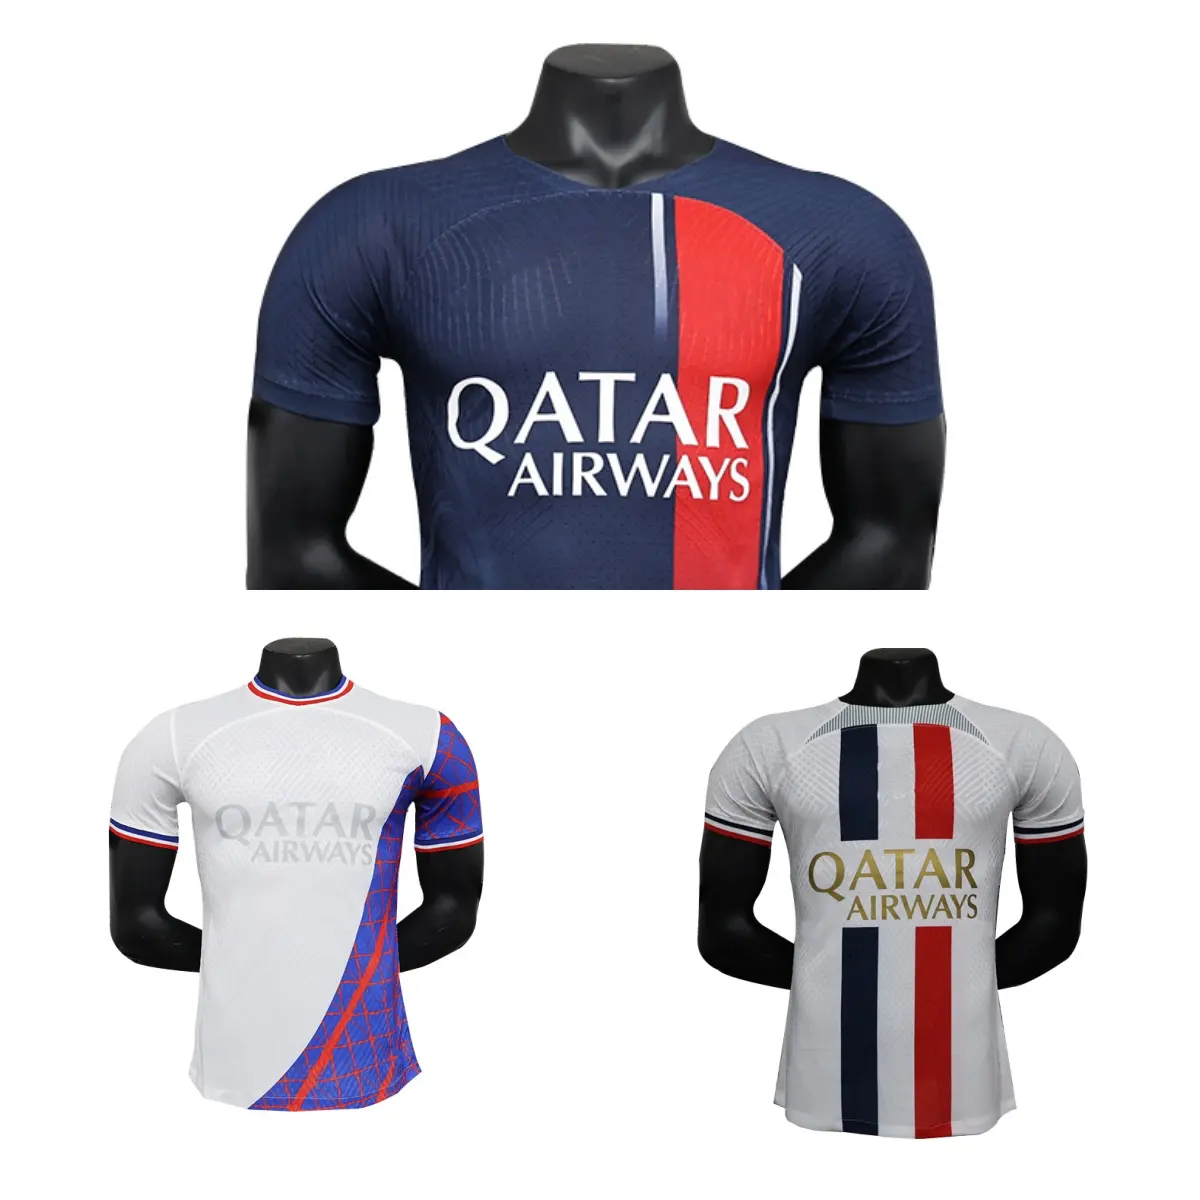 23/24 kaus Prancis kaus latihan pakaian sepak bola kaus Set lengkap kualitas yang klasik grosir kaus sepak bola kosong